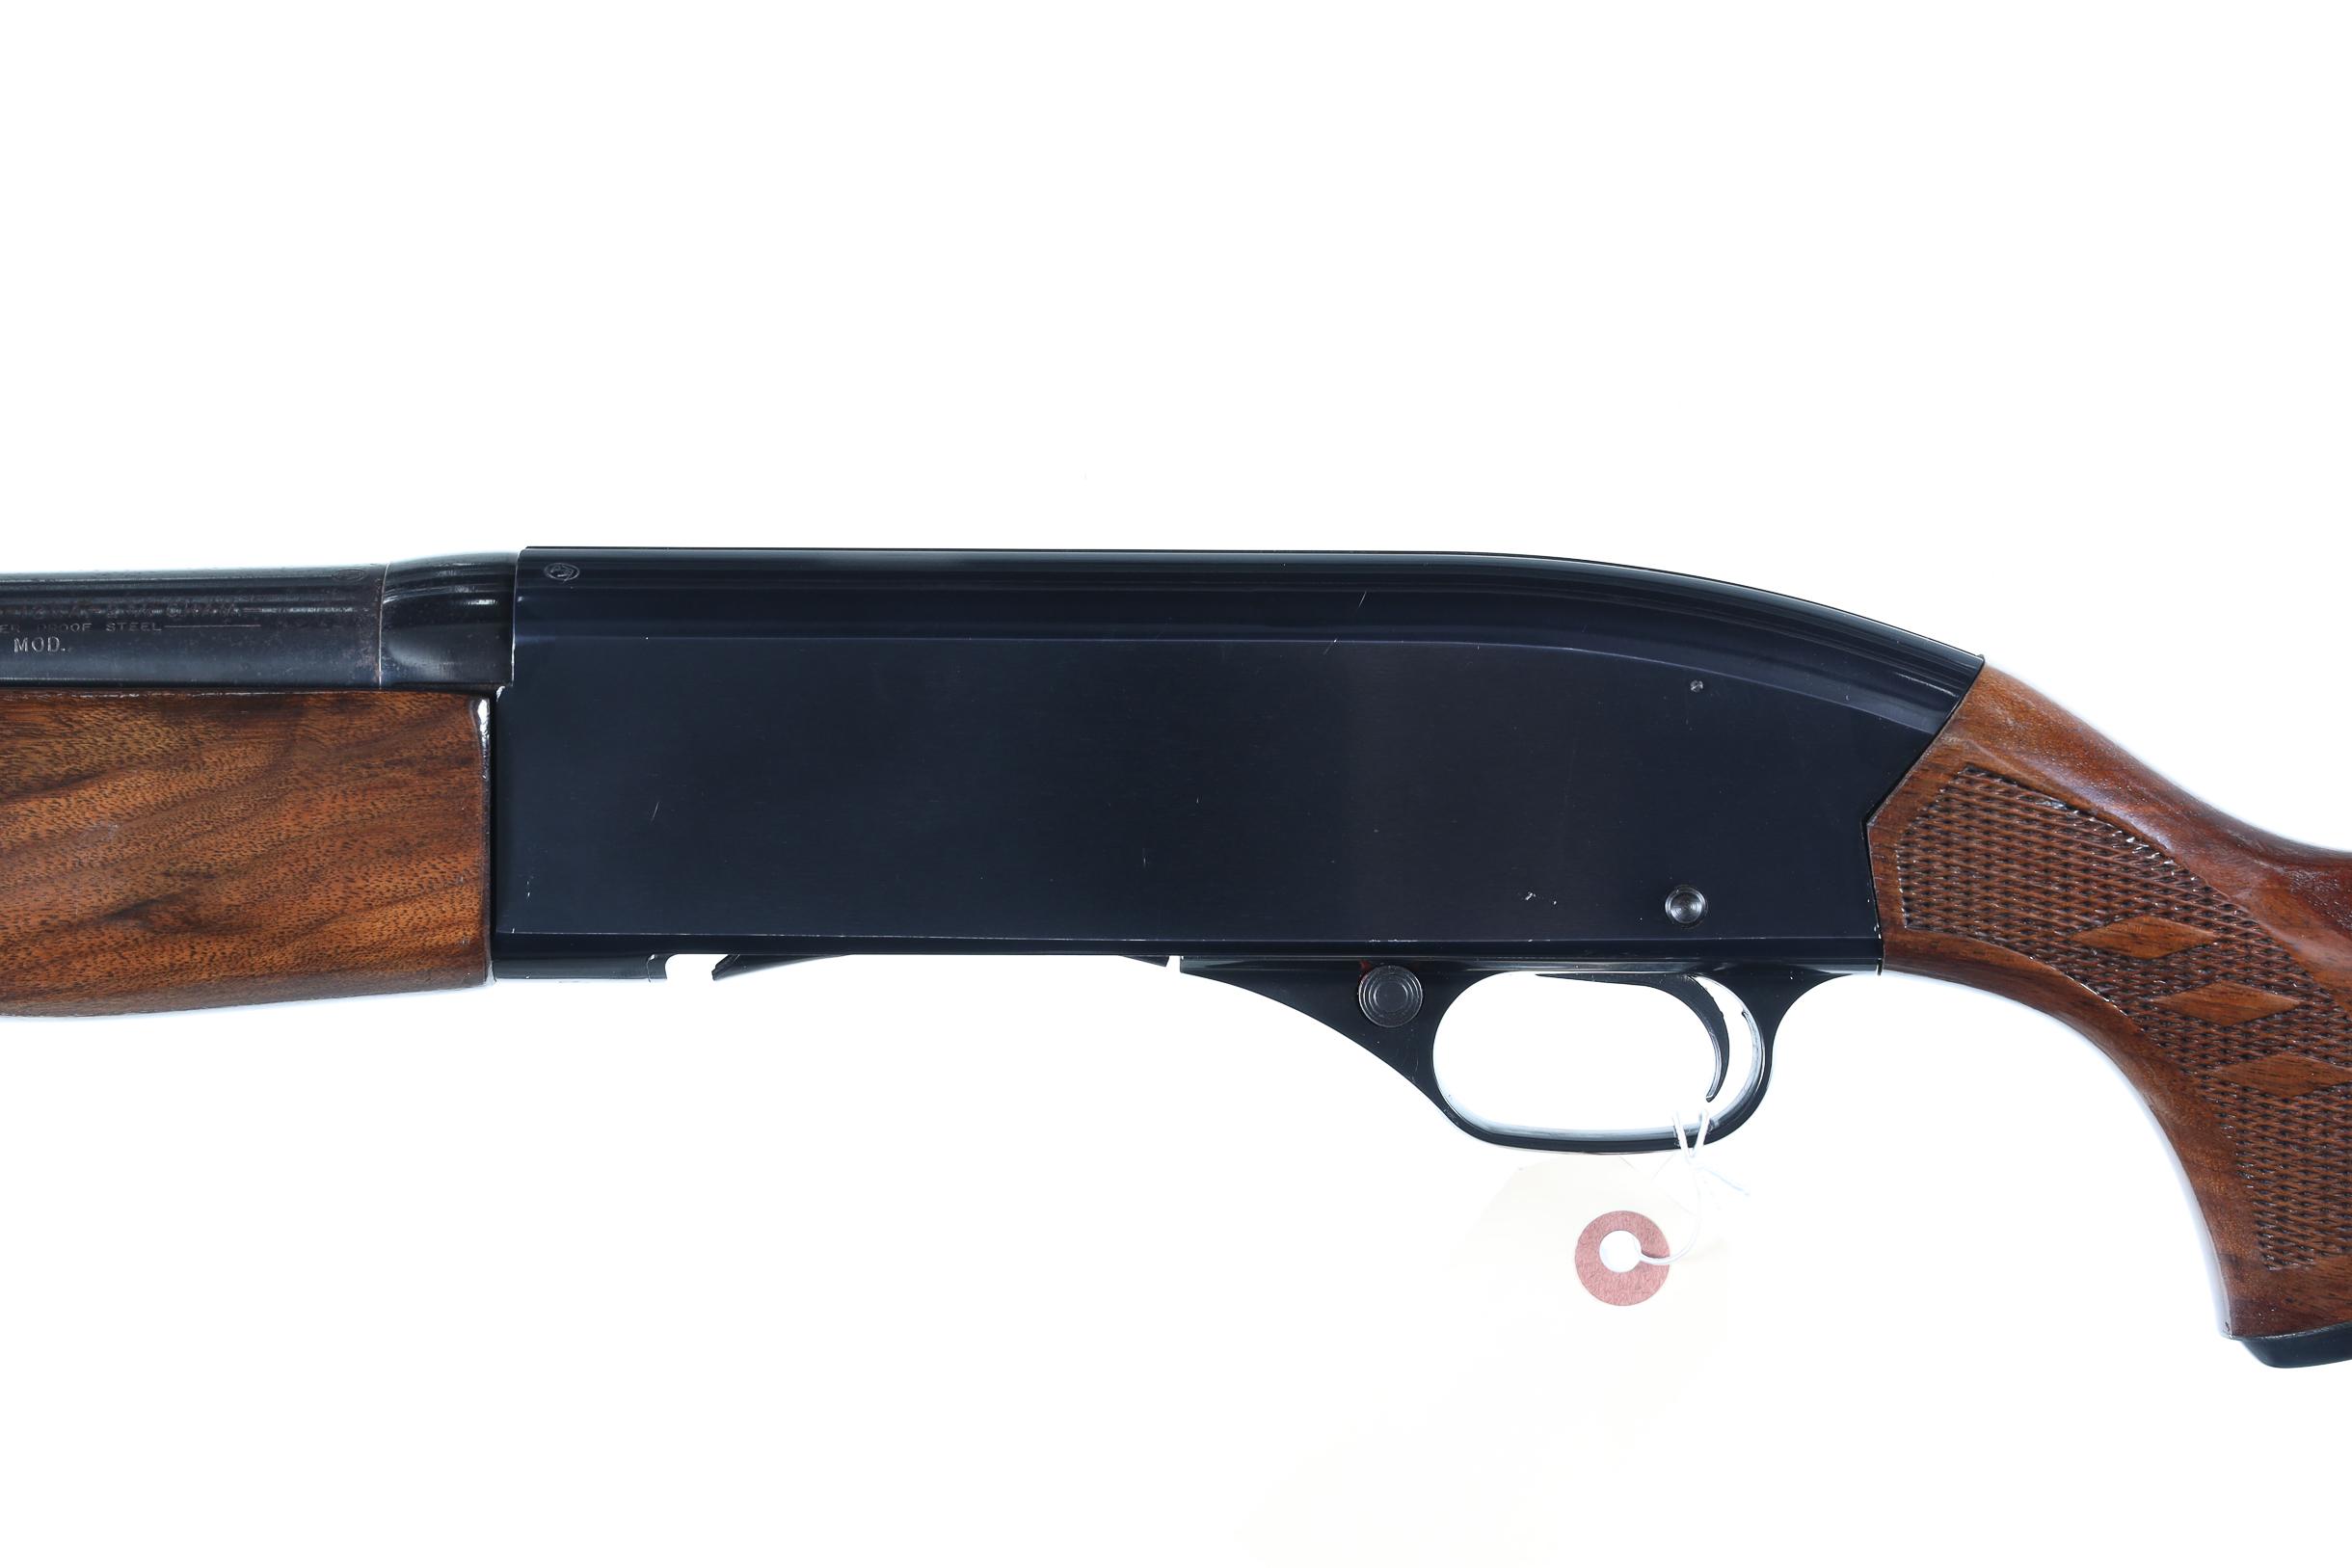 Winchester 1400 Semi Shotgun 12ga